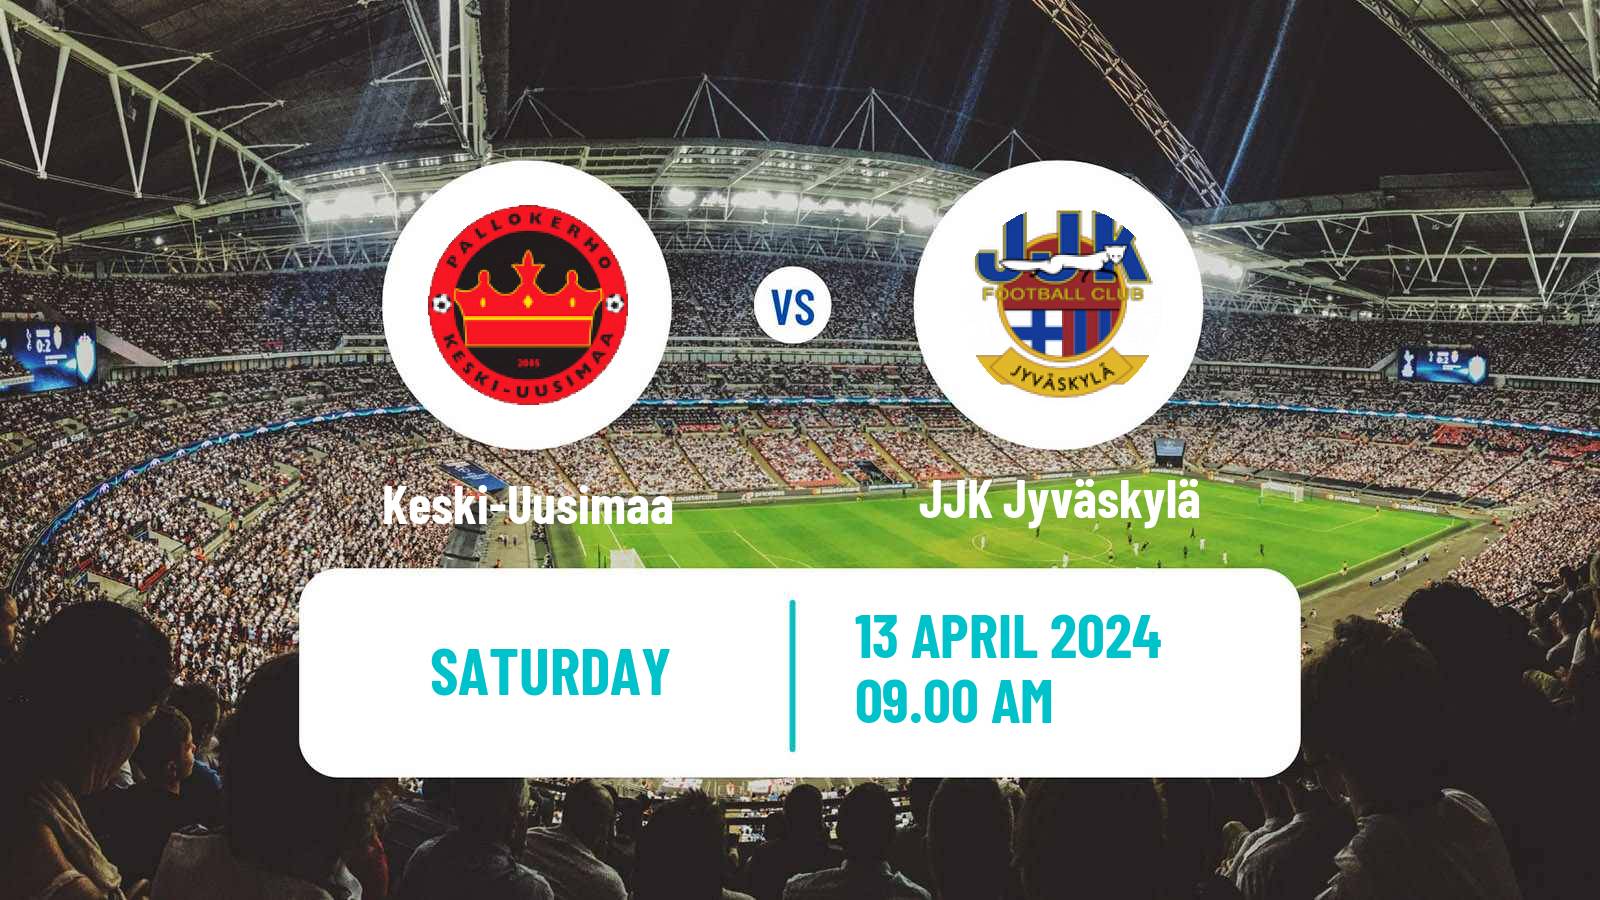 Soccer Finnish Ykkonen Keski-Uusimaa - JJK Jyväskylä